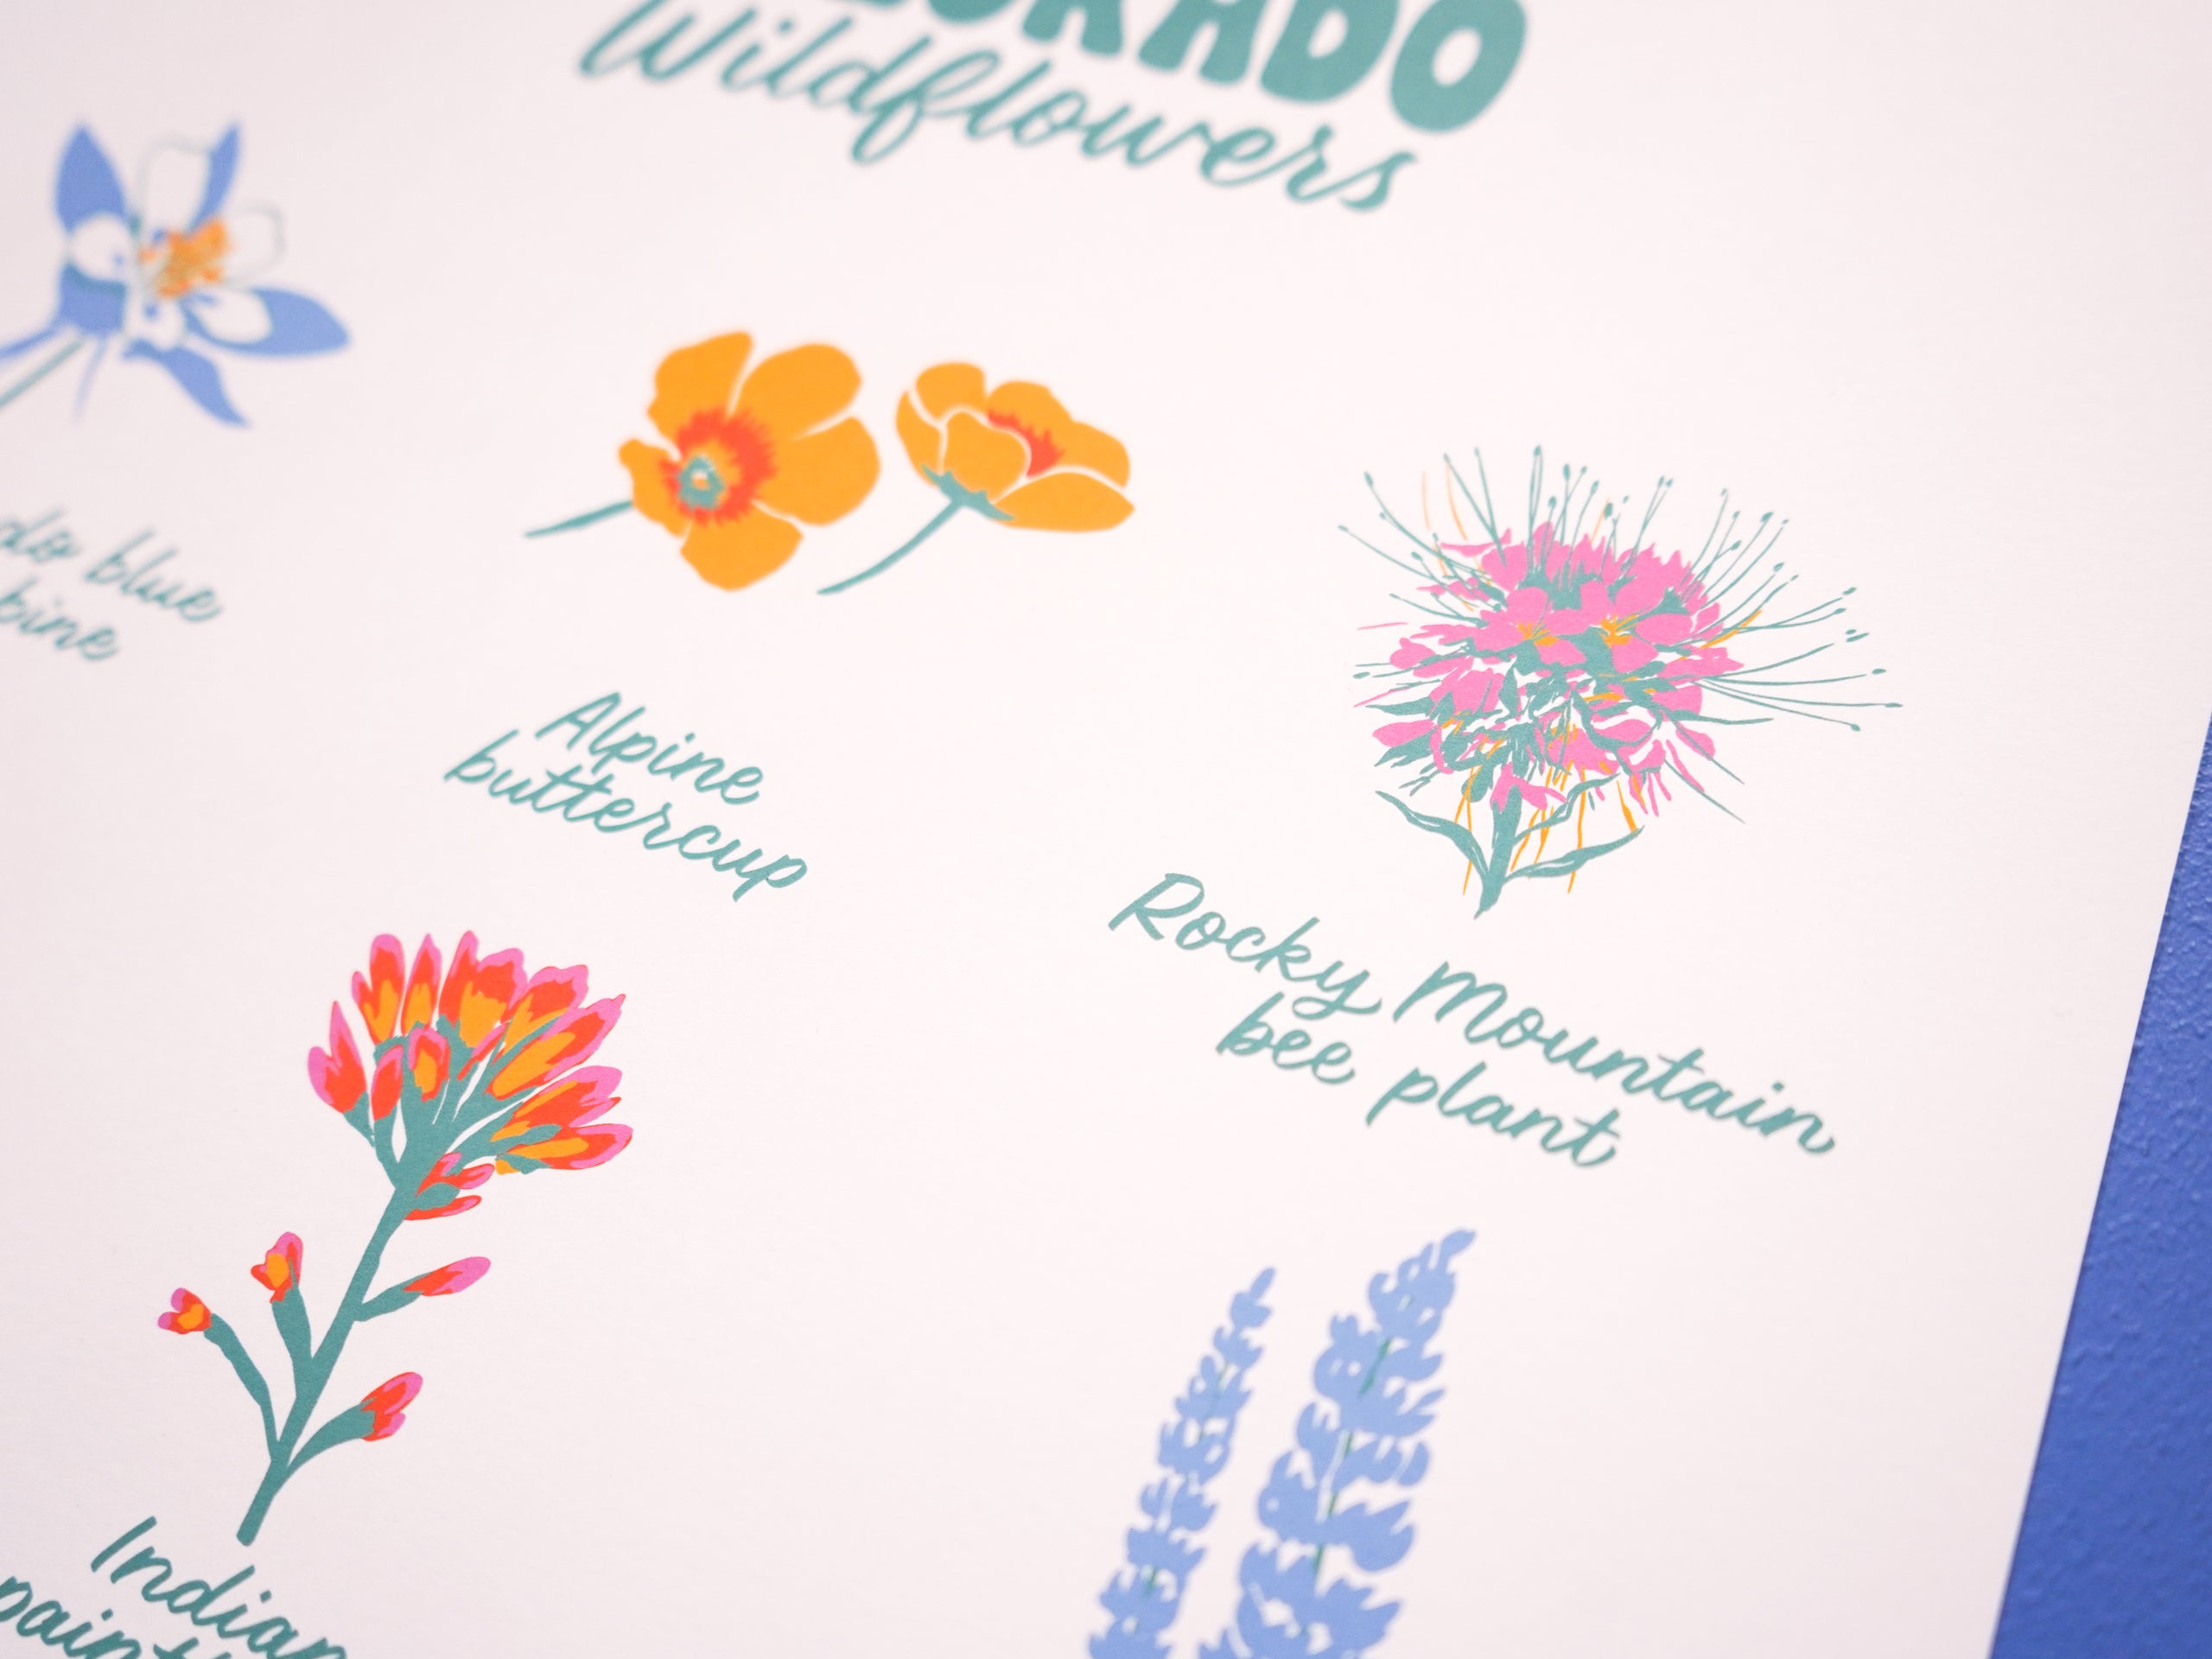 Colorado Wildflowers Print - 11x14"